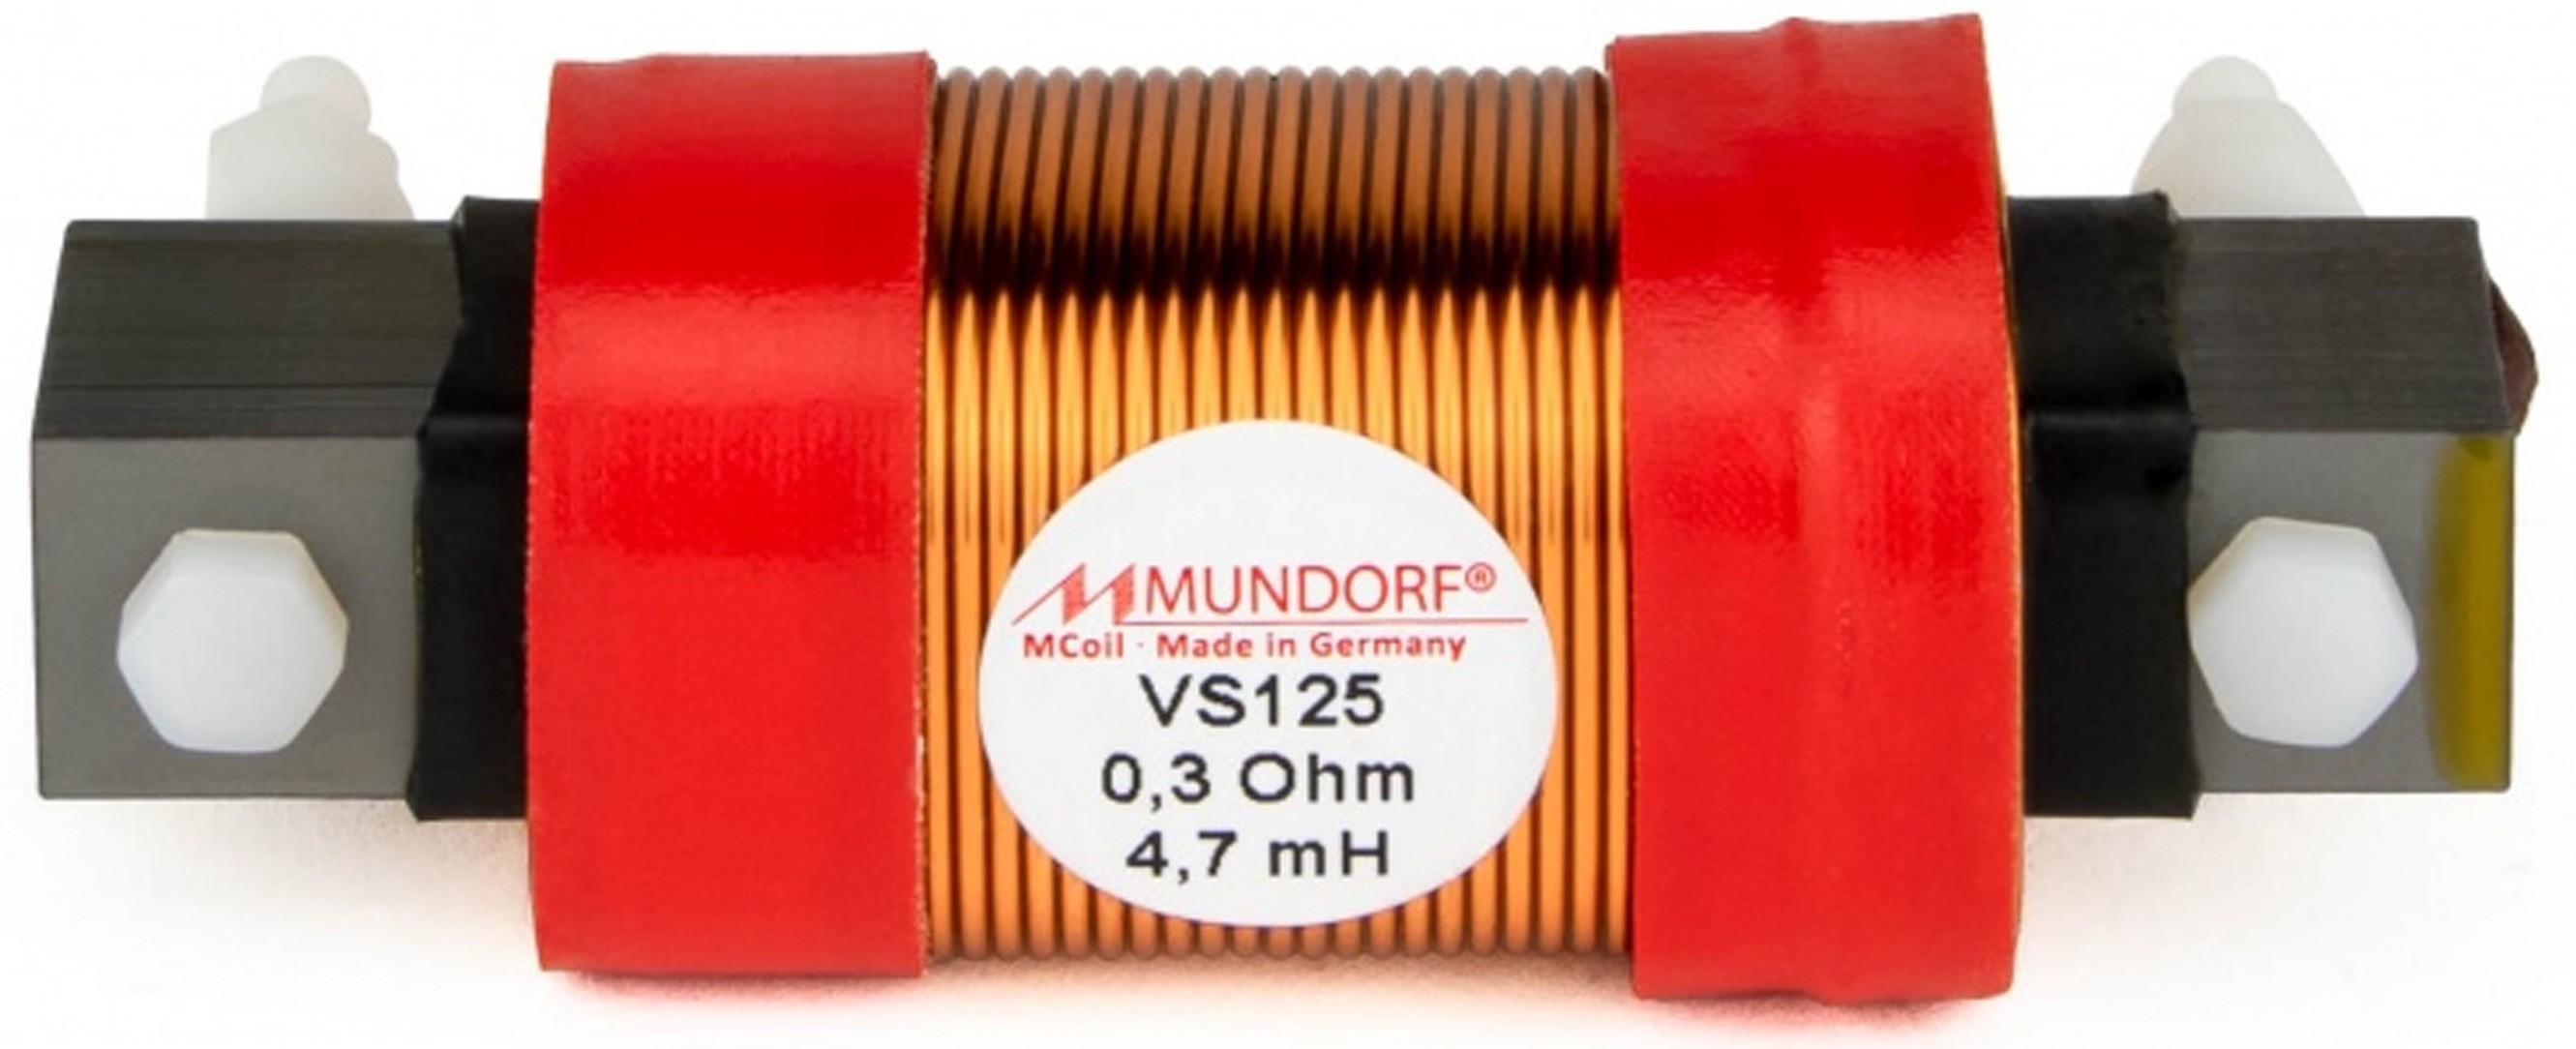 MUNDORF VS125-3.3 MCOIL ICORE Copper Coil Feron Core 3.3mH